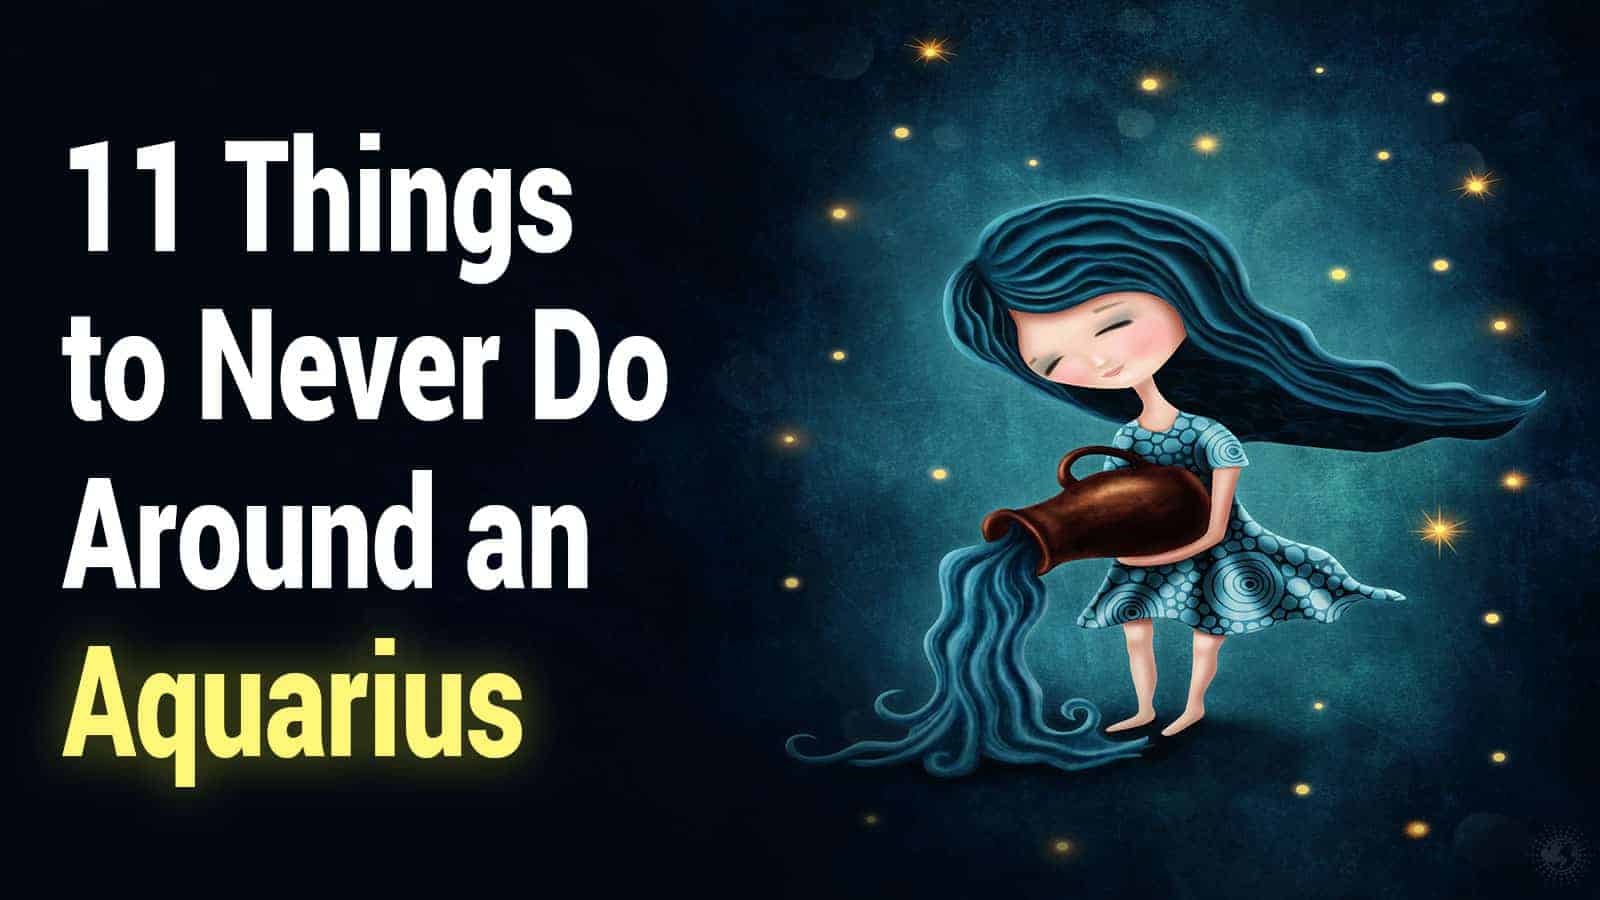 11 Things to Never Do Around an Aquarius